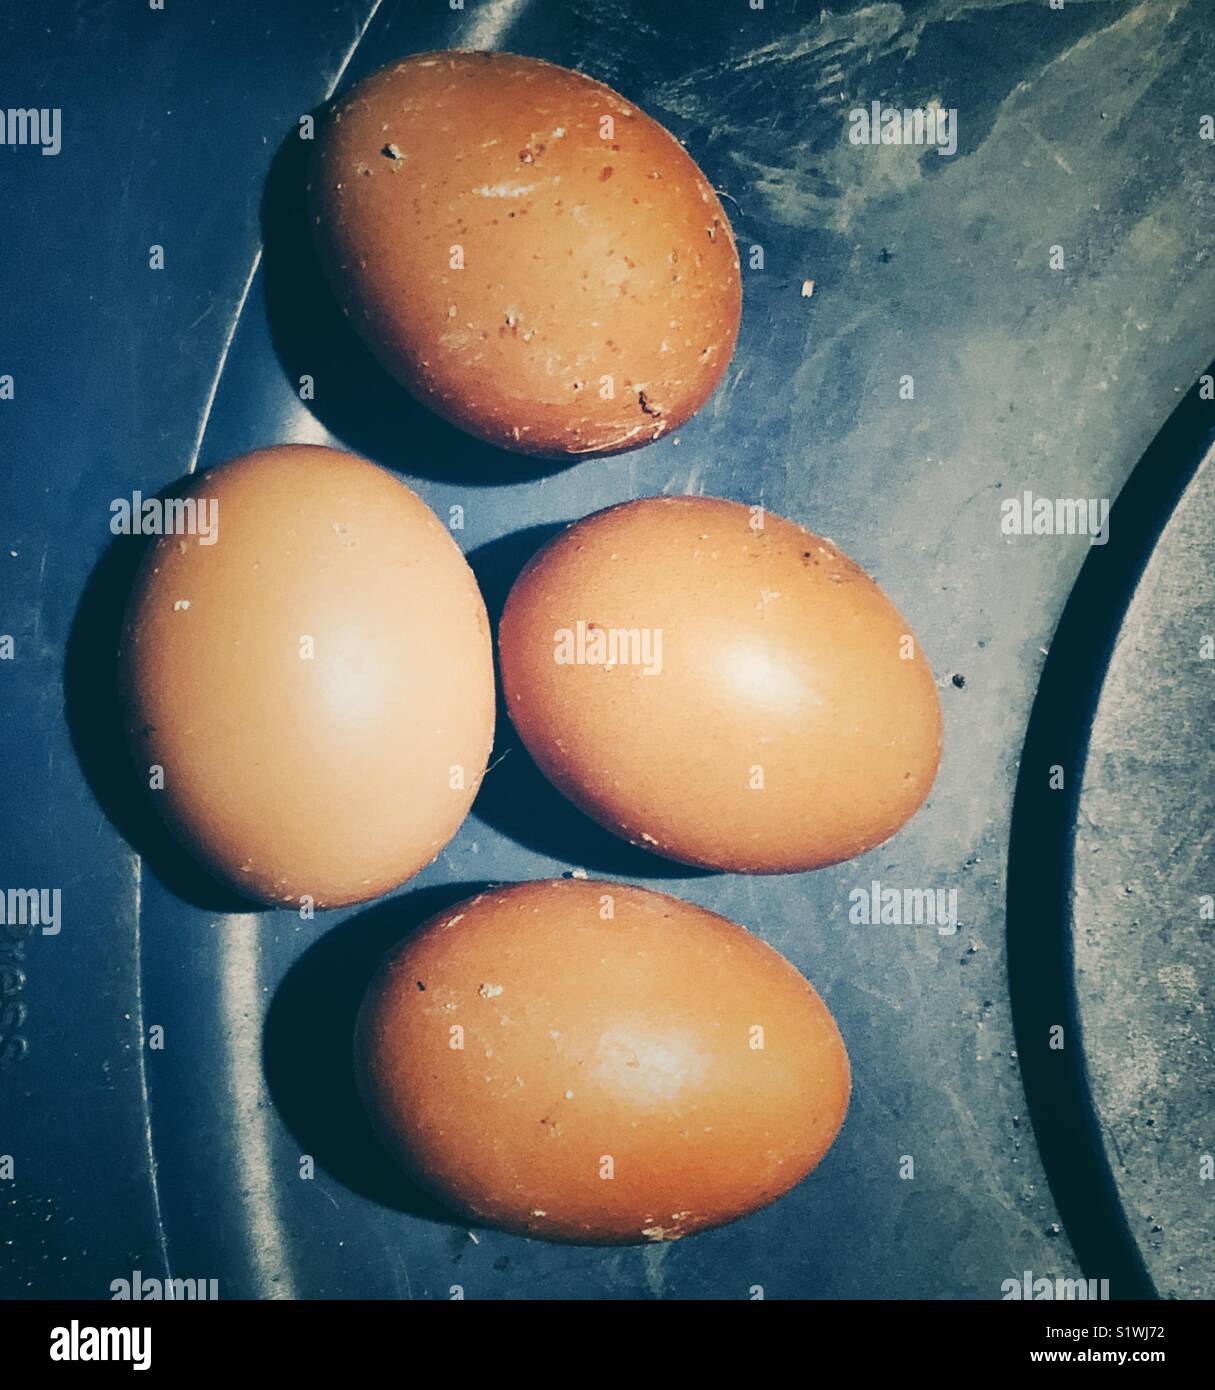 Los huevos de gallina frescos cosechados marrón sobre la superficie de plástico azul Foto de stock